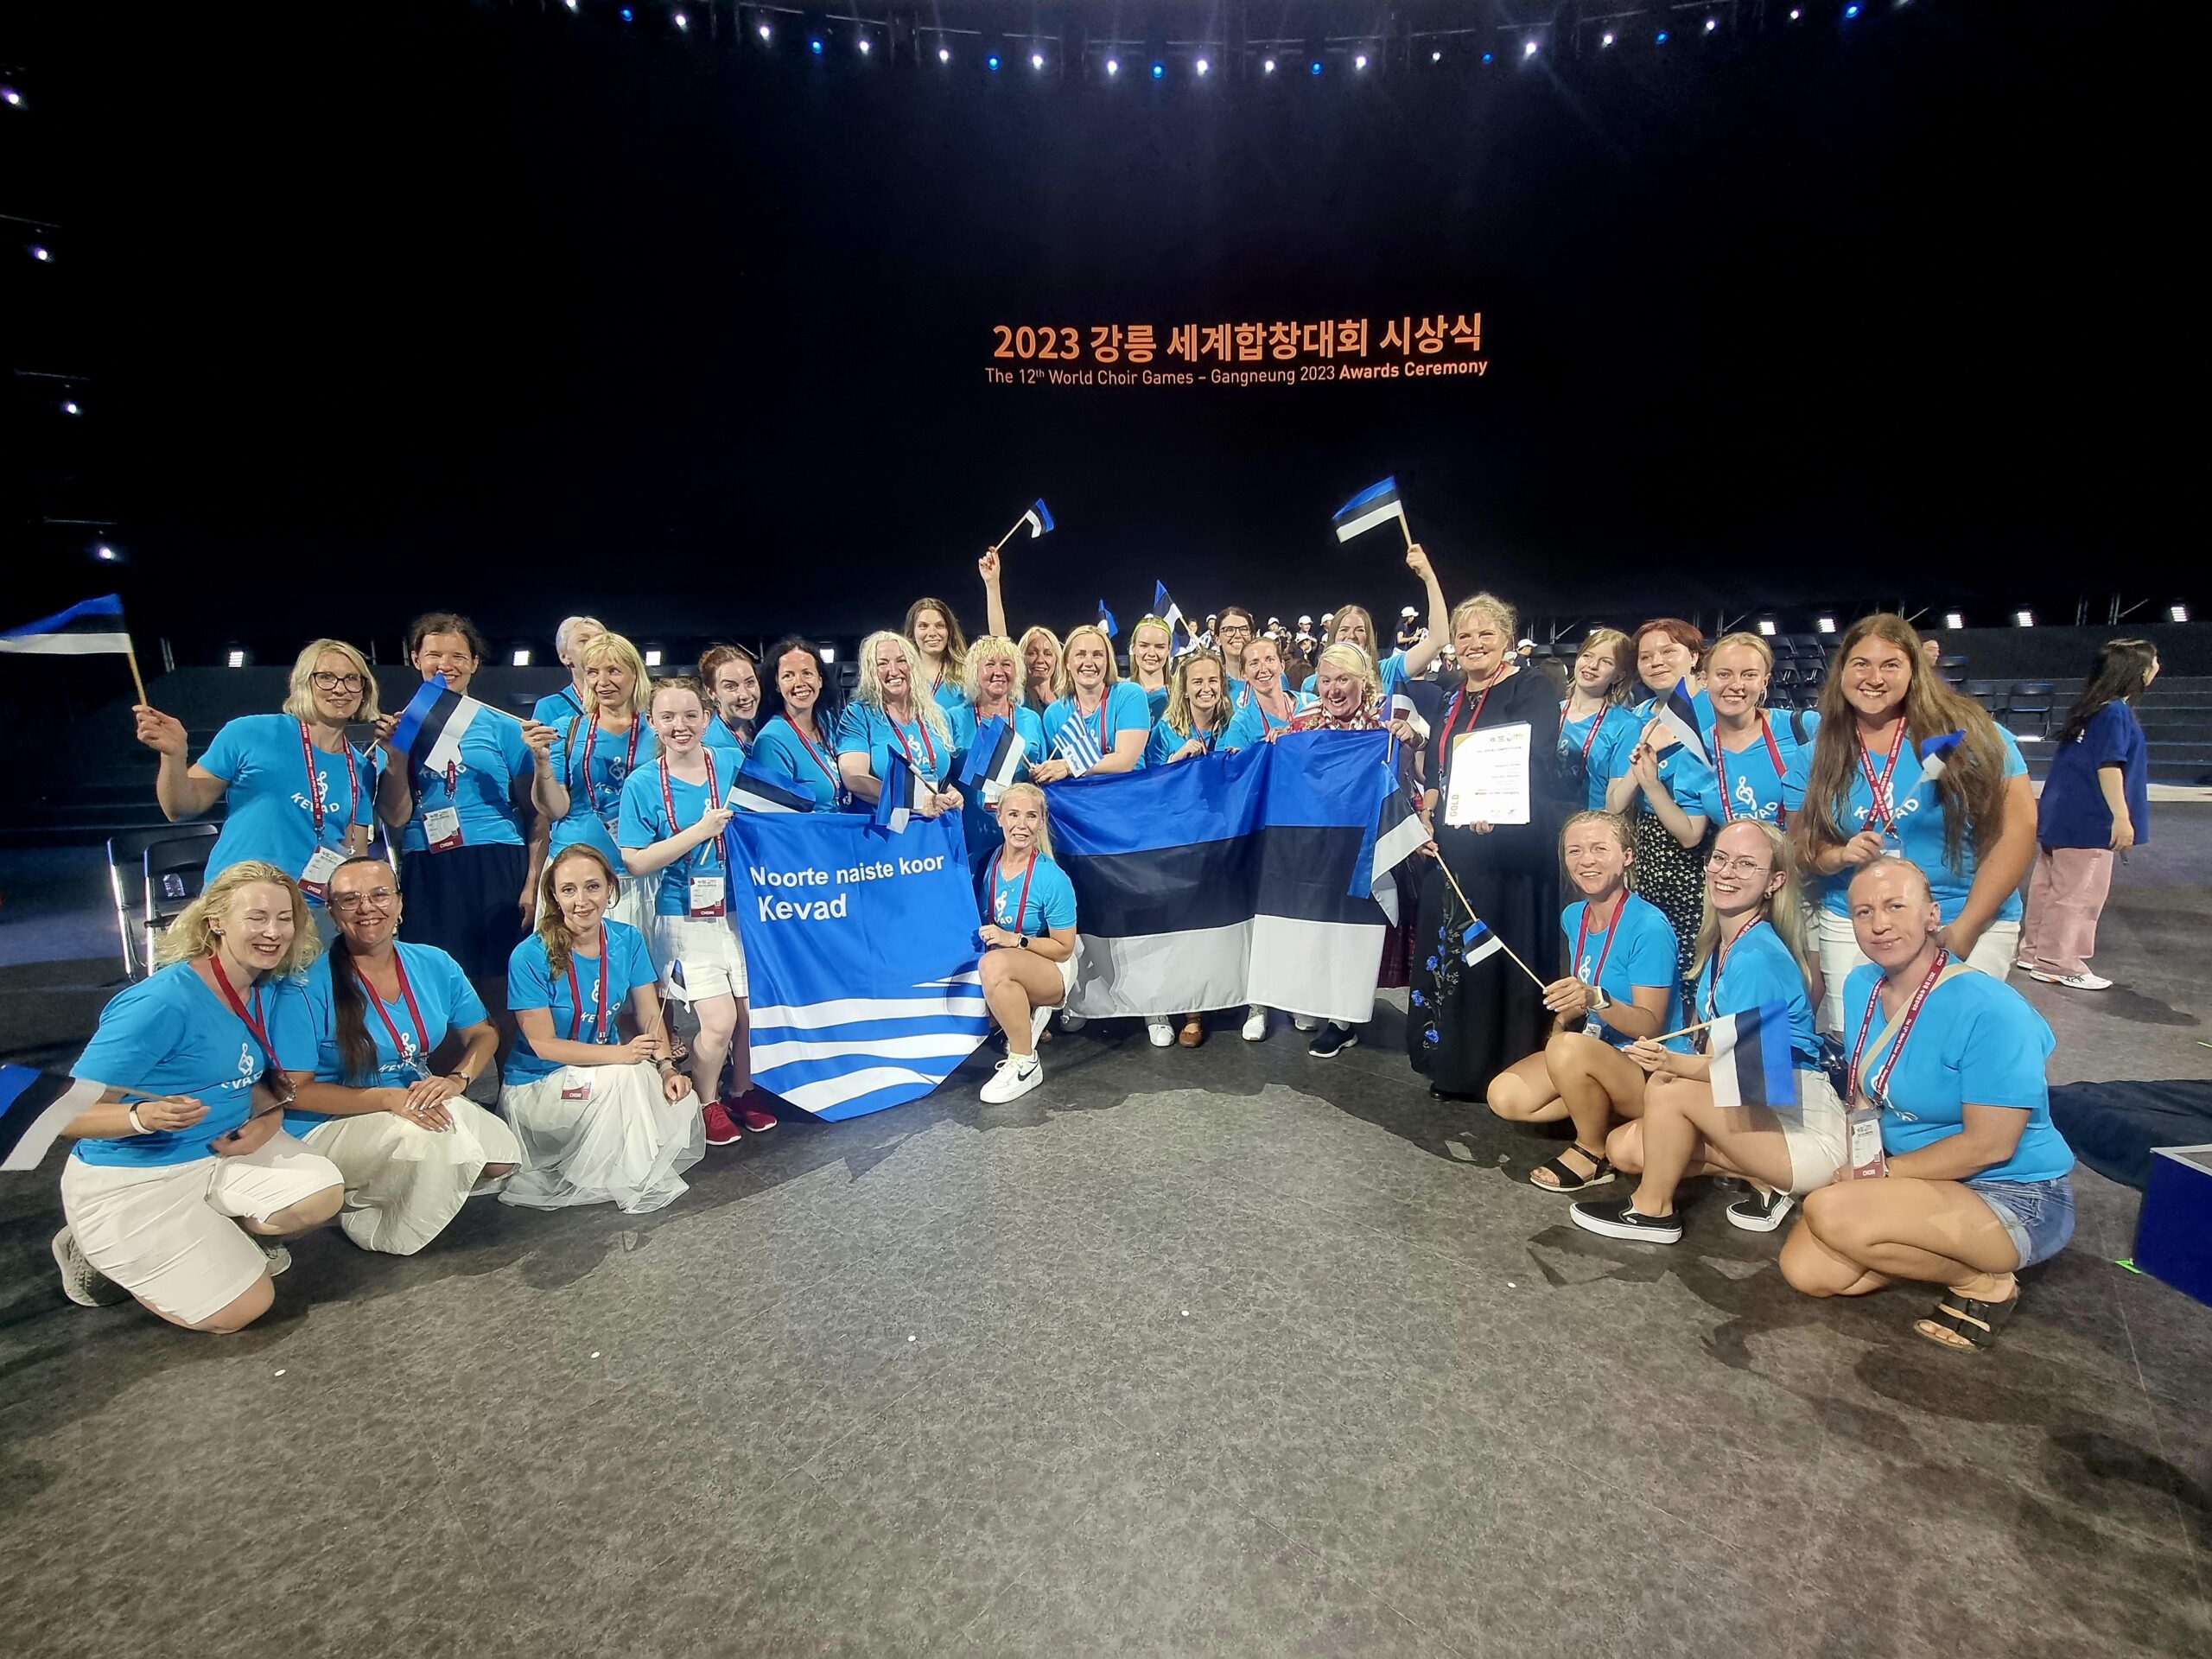 Nõmme Kultuurikeskuse Naiskoor Kevad esines edukalt Lõuna-Koreas, Gangneungis toimunud kooride maailmamängudel